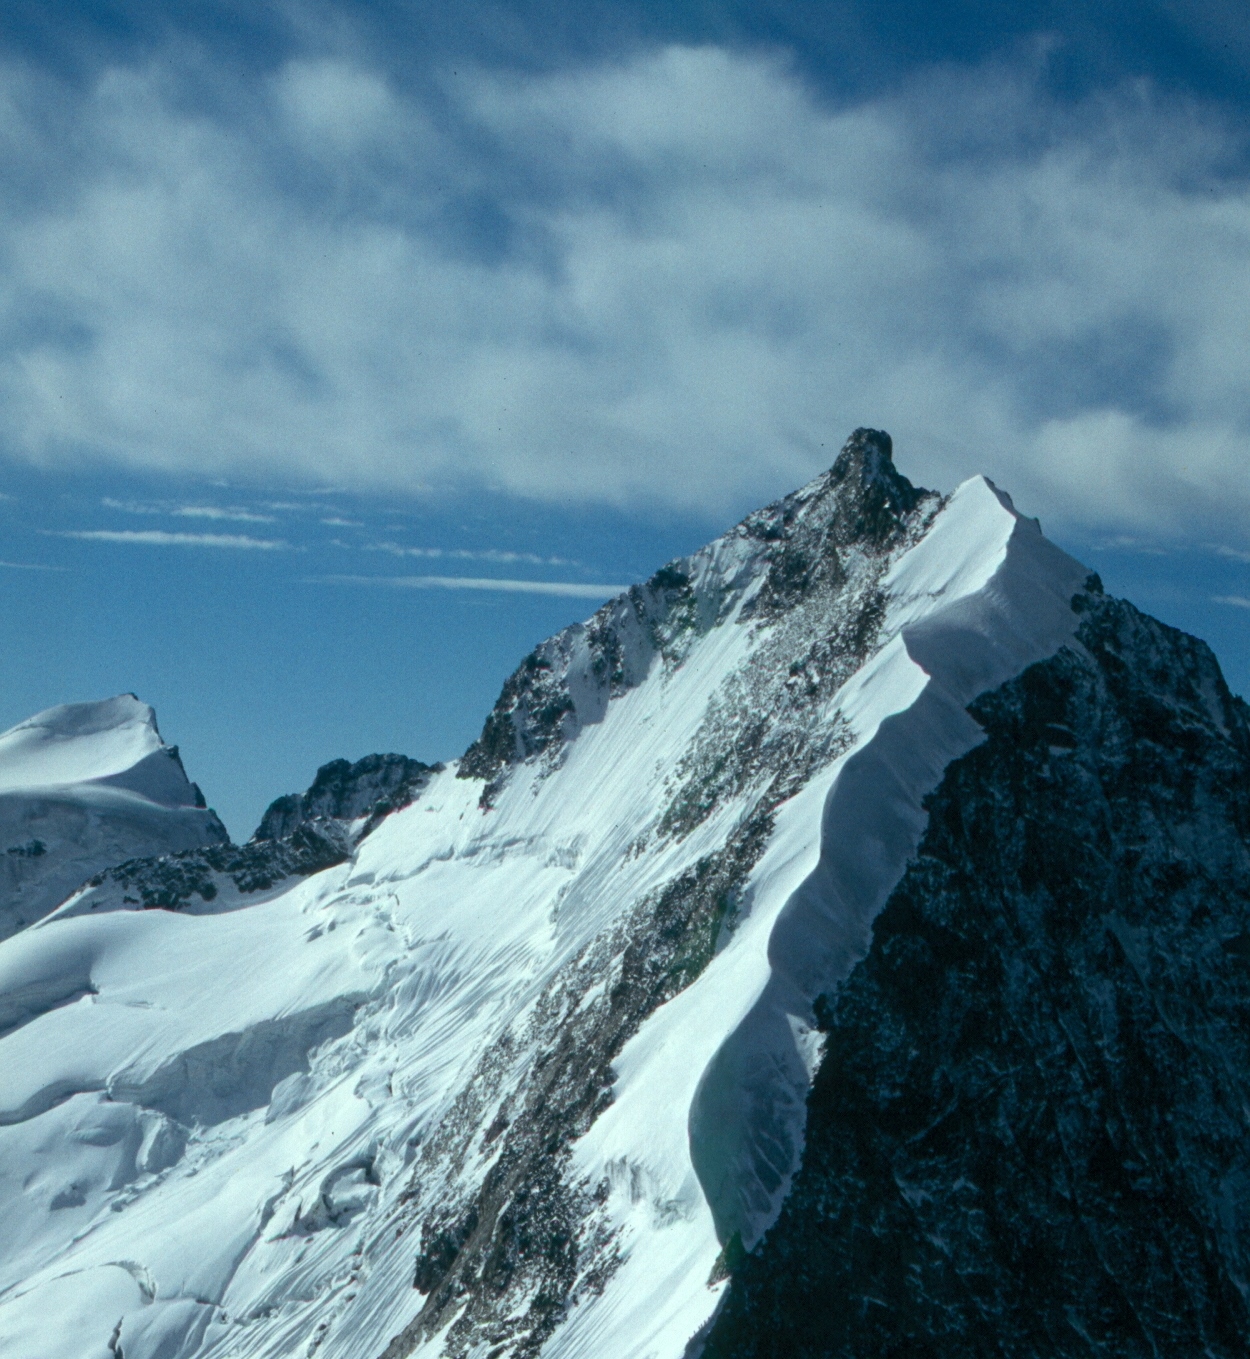  гора Бернина (Piz Bernina, 4049 метров).